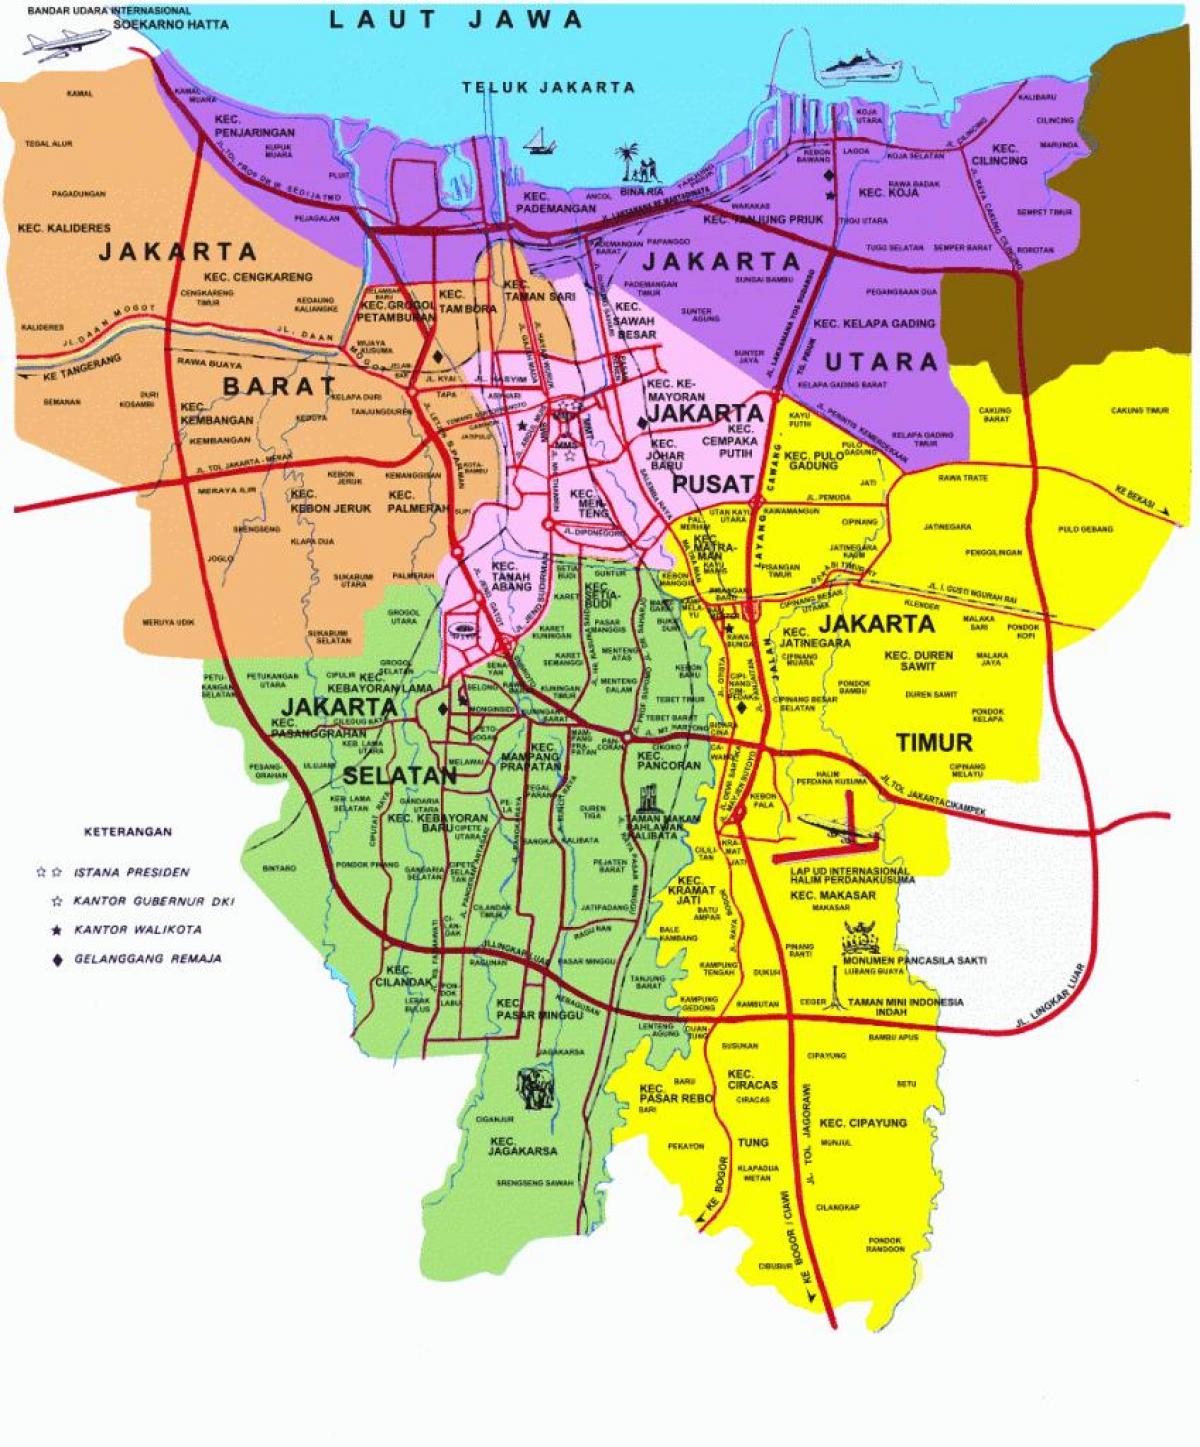 Jakarta pinupuntahan ng mga turista mapa